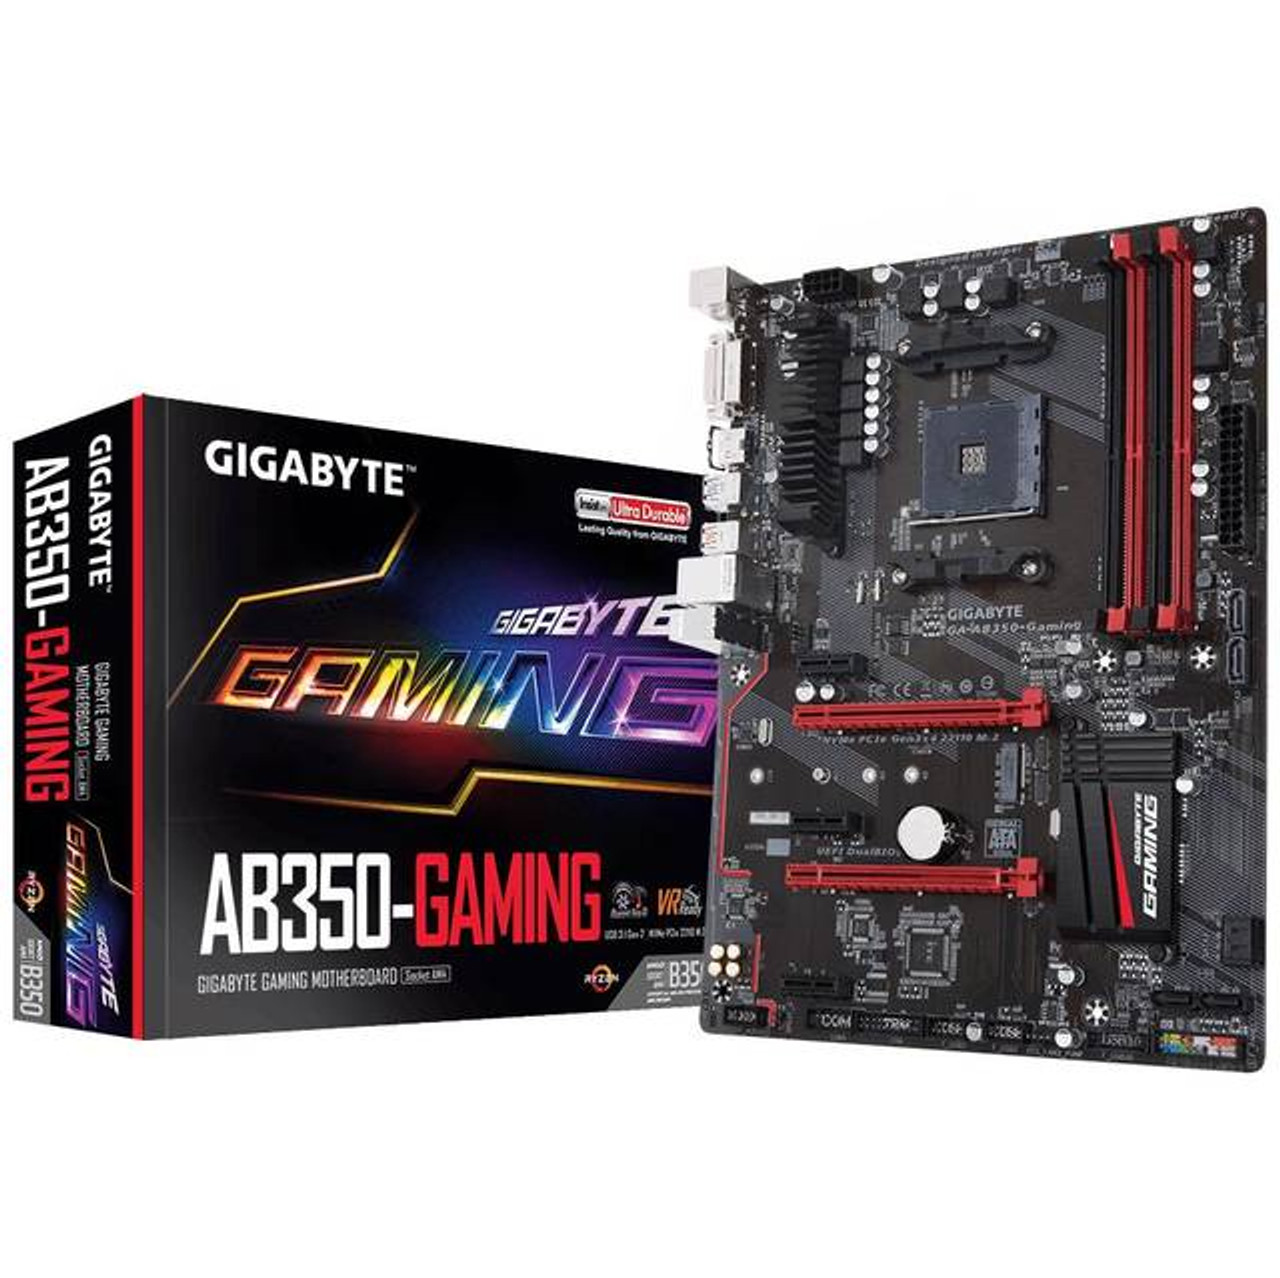 GIGABYTE GA-AB350-GAMING Socket AM4/ AMD B350/ DDR4/ SATA3&USB3.1/ M.2/ A&GbE/ ATX Motherboard